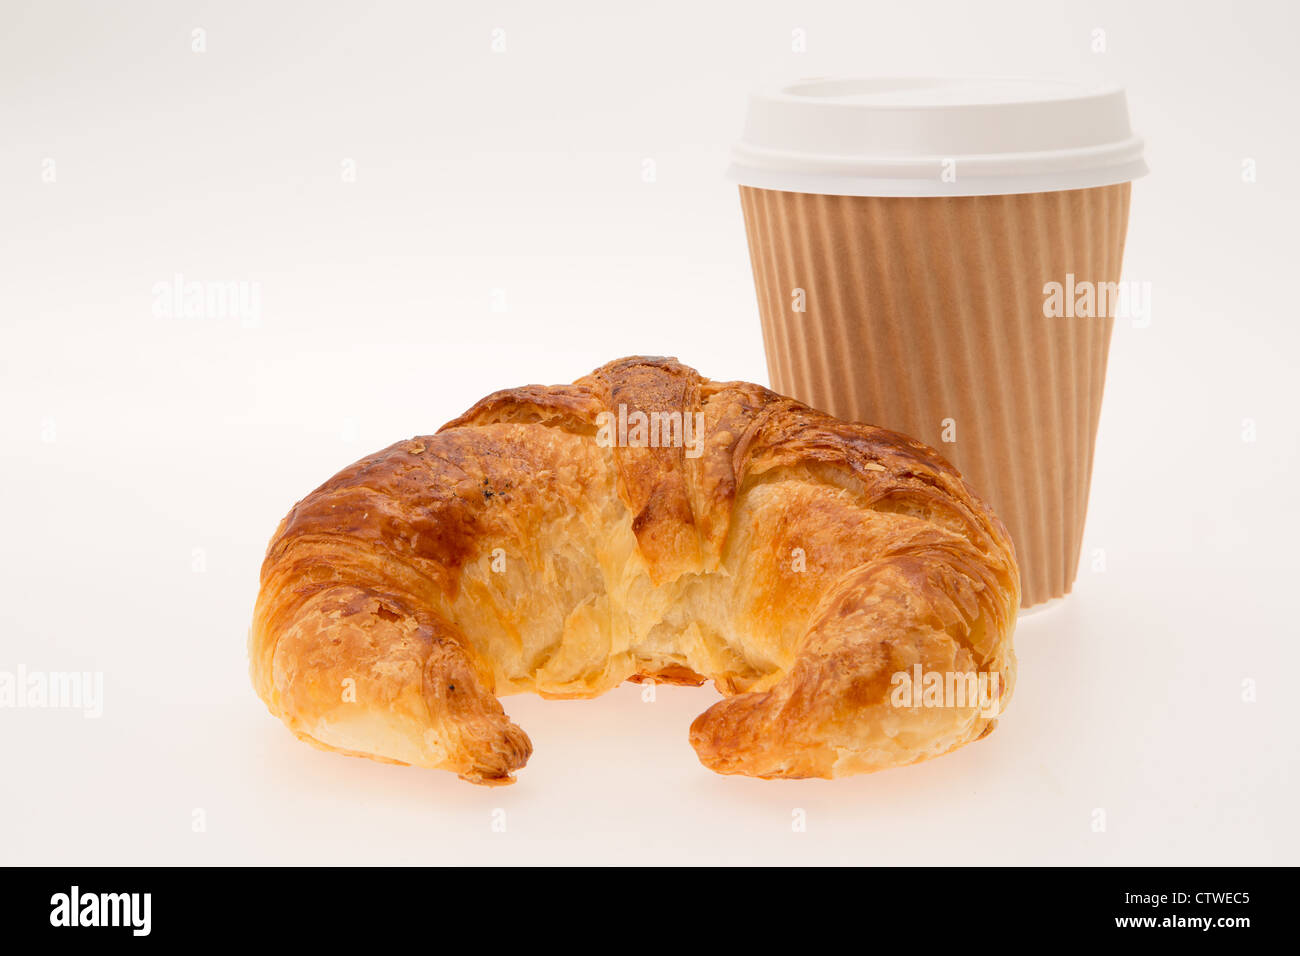 Ein Herausnehmen der Frühstück, bestehend aus einem Croissant und Kaffee in einer Einweg-Tasse - Studio gedreht mit einem weißen Hintergrund Stockfoto